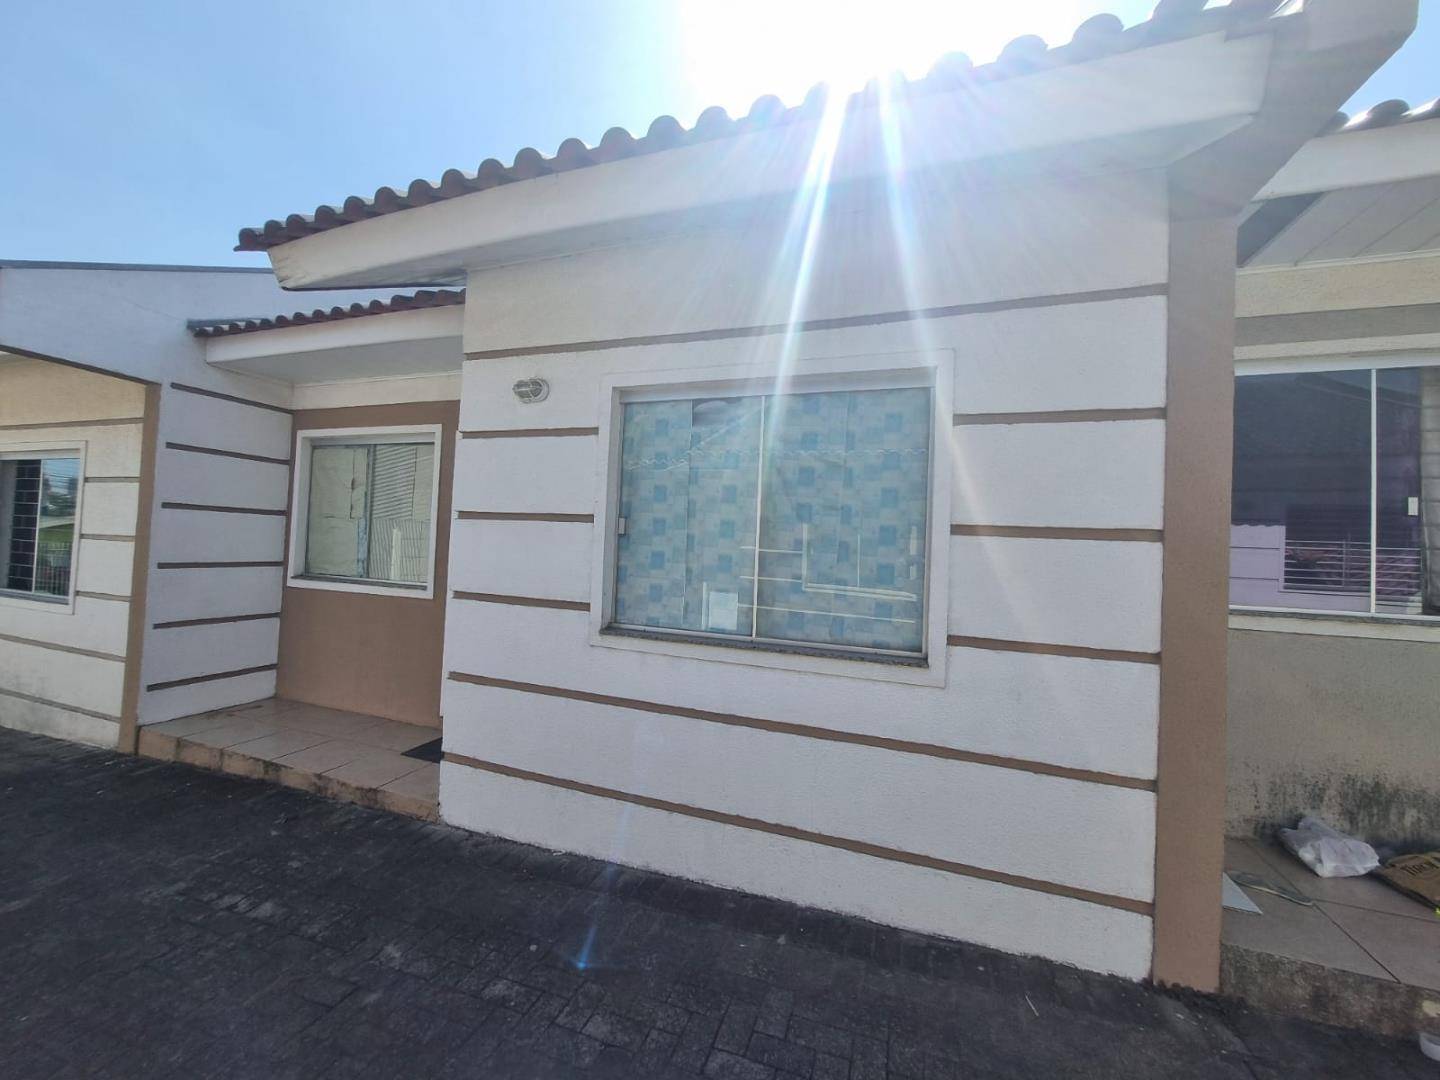 Casa para vendalocacaovenda e locacao no Boa Vista em Ponta Grossa com 48,84m² por R$ 199.900,00850,00